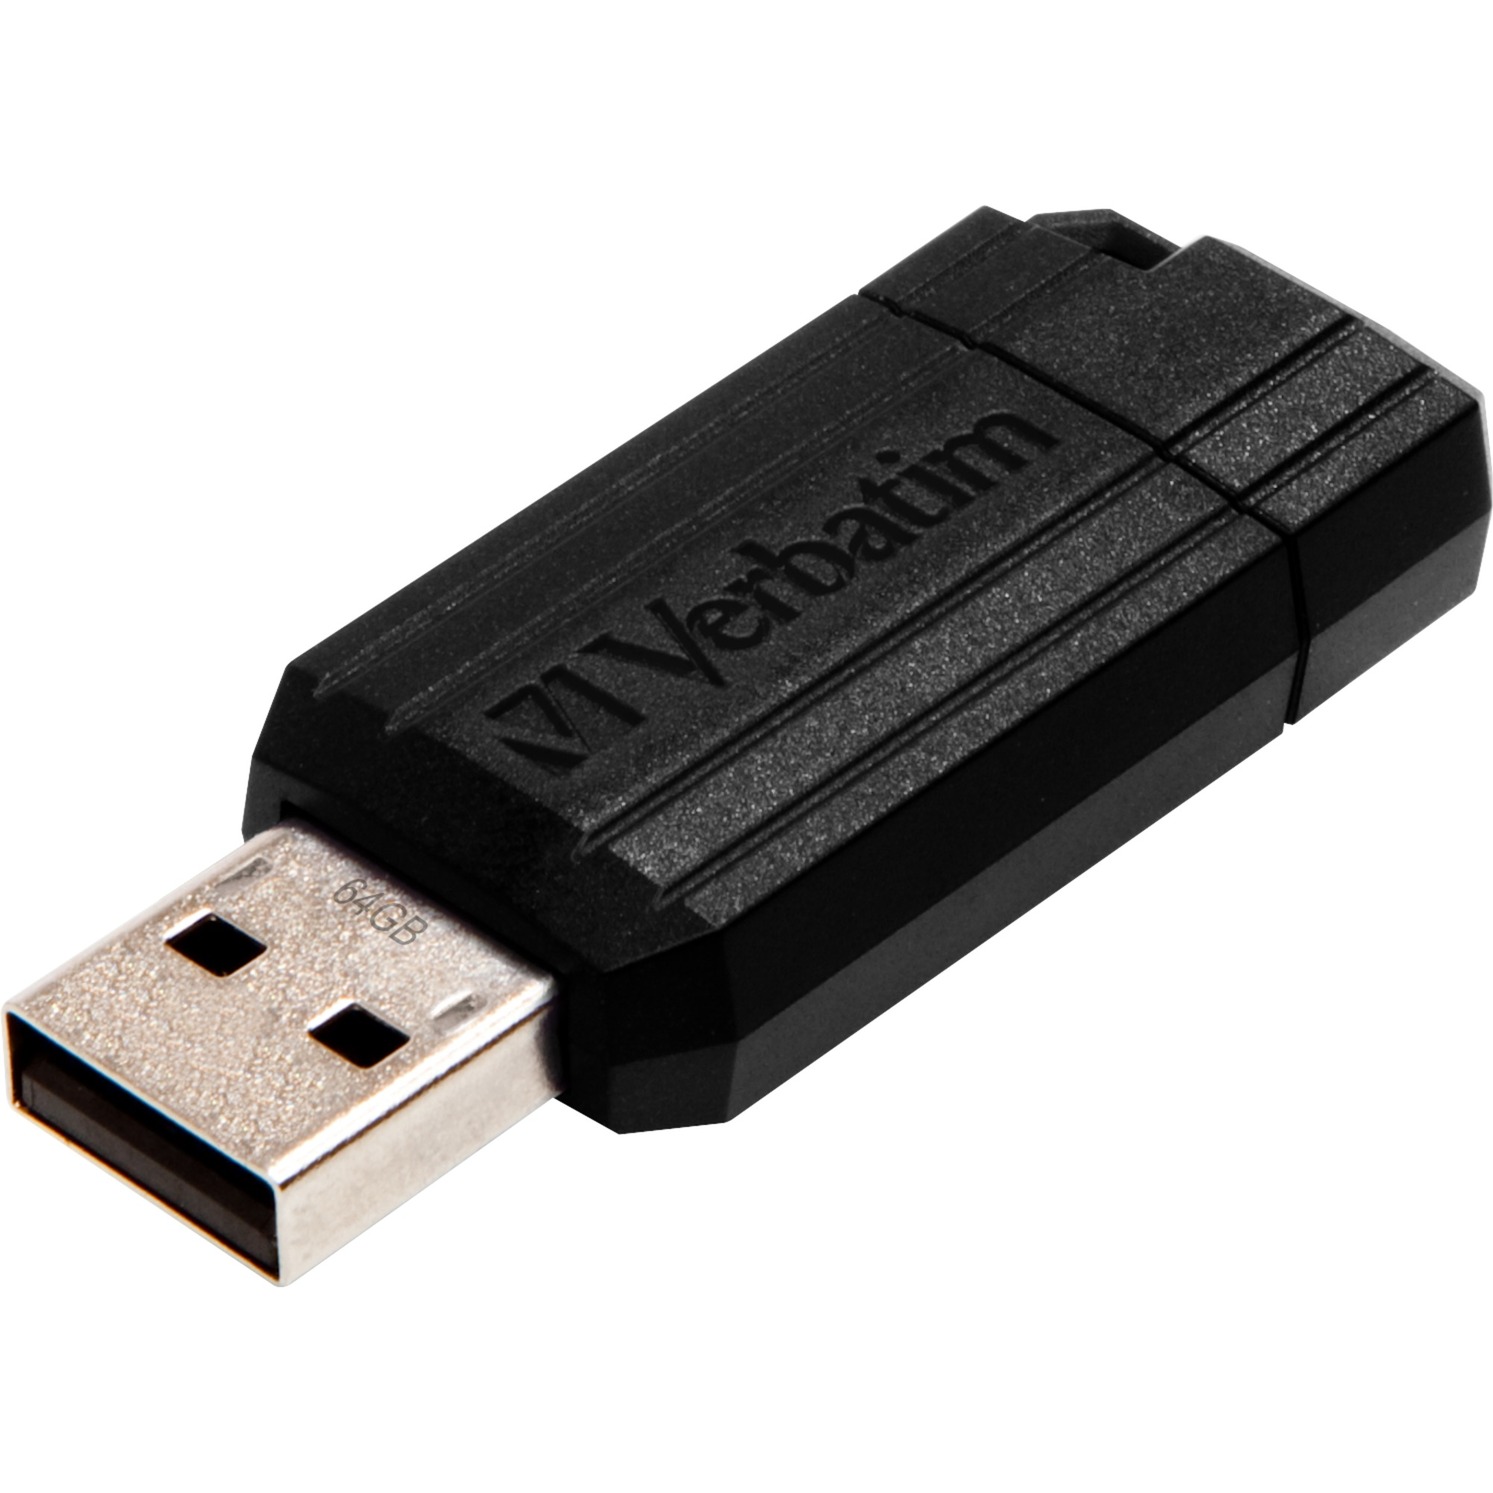 PinStripe 16 GB, USB-Stick von Verbatim